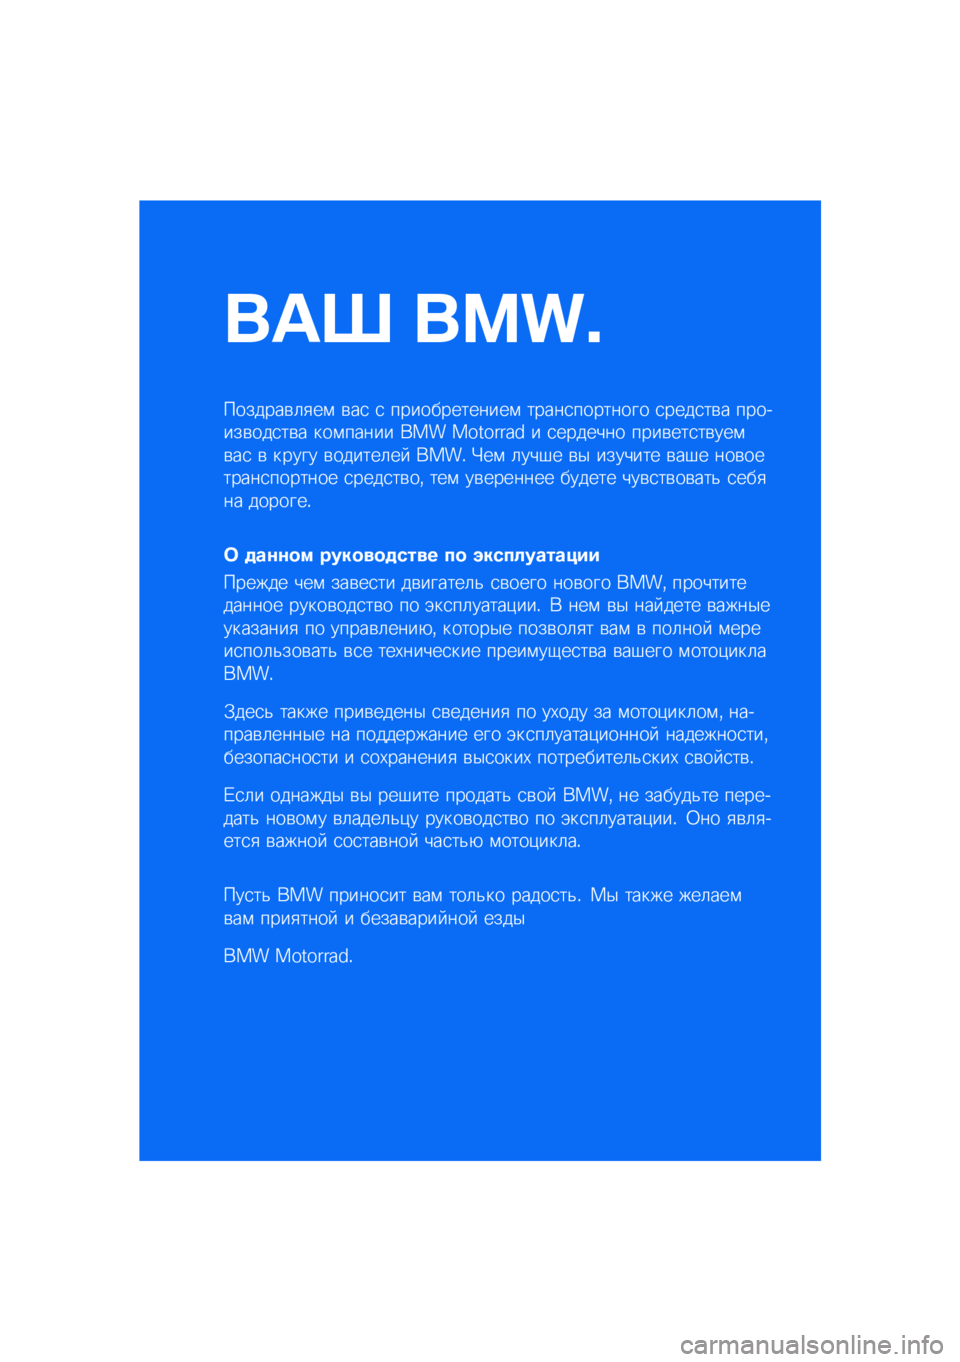 BMW MOTORRAD R NINE T URVAN G/S 2020  Руководство по эксплуатации (in Russian) ��� ����\b
�������\b�	�
��\f �\b��
 �
 �������������\f �����
�������� �
����
��\b� �������\b���
��\b� ���\f����� ��� �������� � 